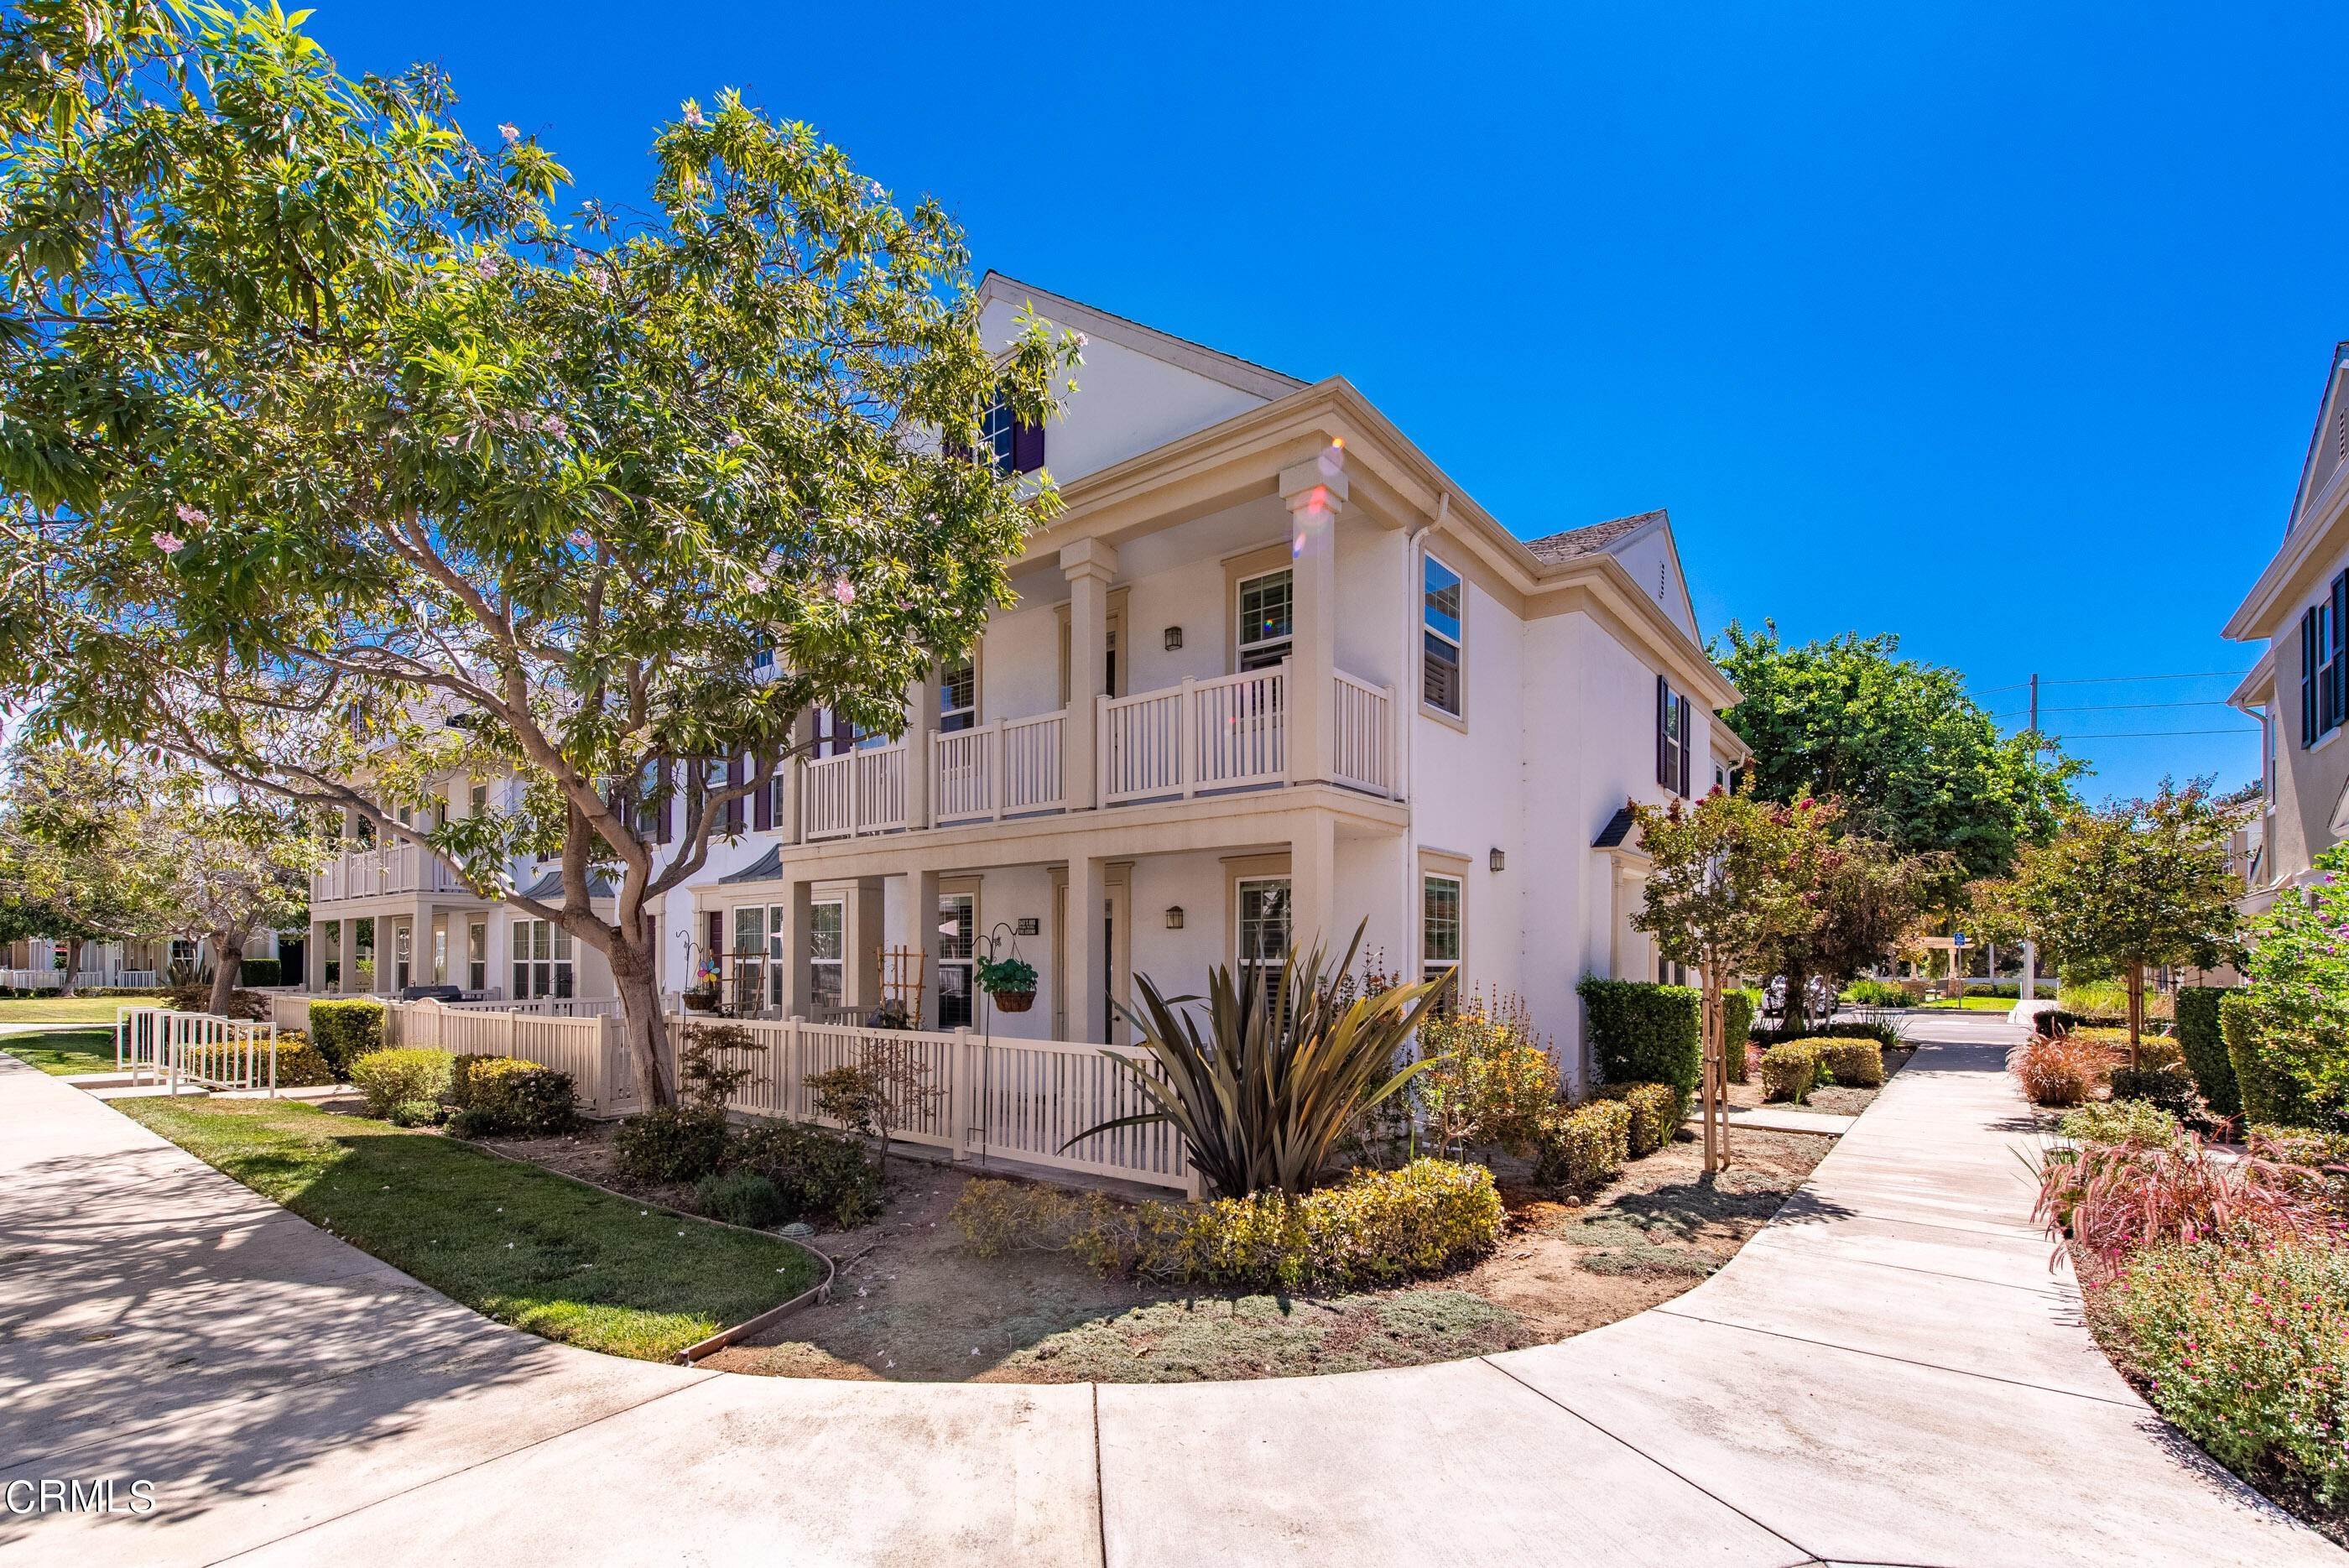 1. Condominiums for Sale at 5565 Dorsey Street Ventura, California 93003 United States